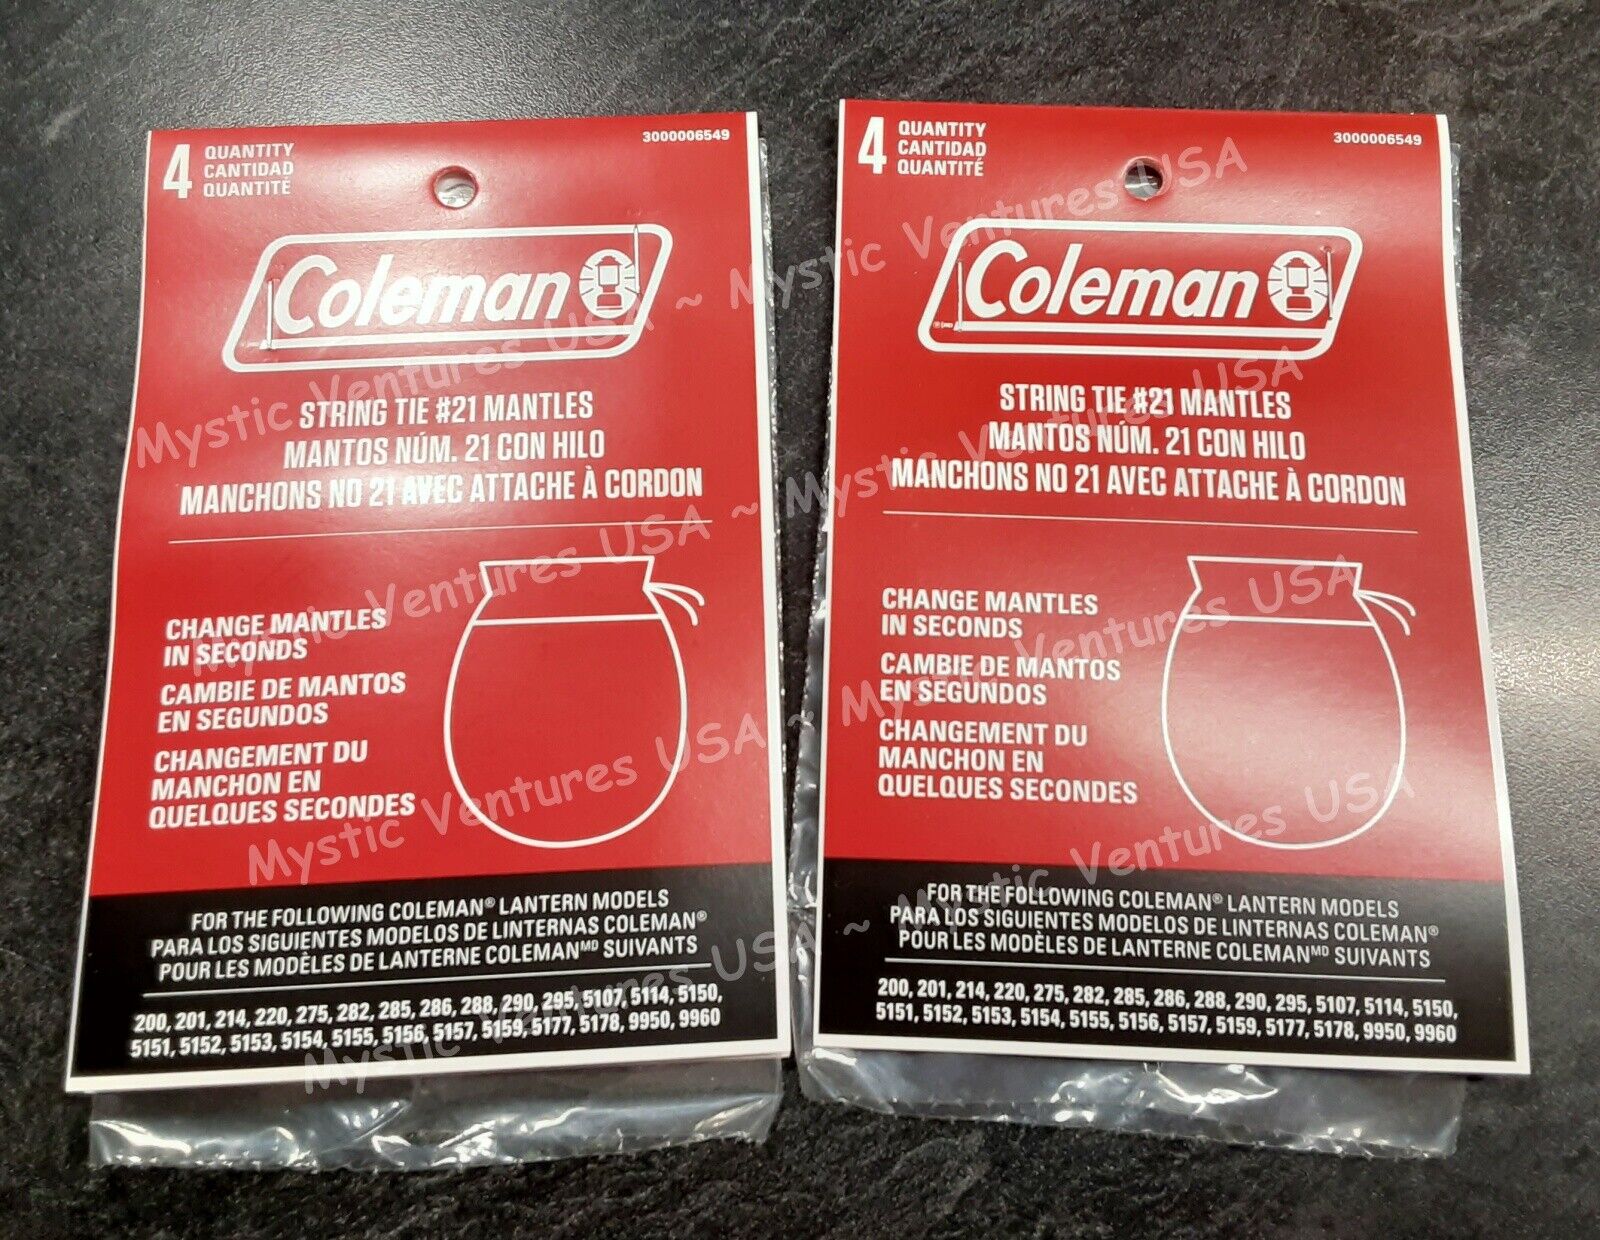 2pks 4 each (8 total) GENUINE #21 Coleman Lantern String Tie Mantles - Camping Coleman 3000004000 - фотография #2